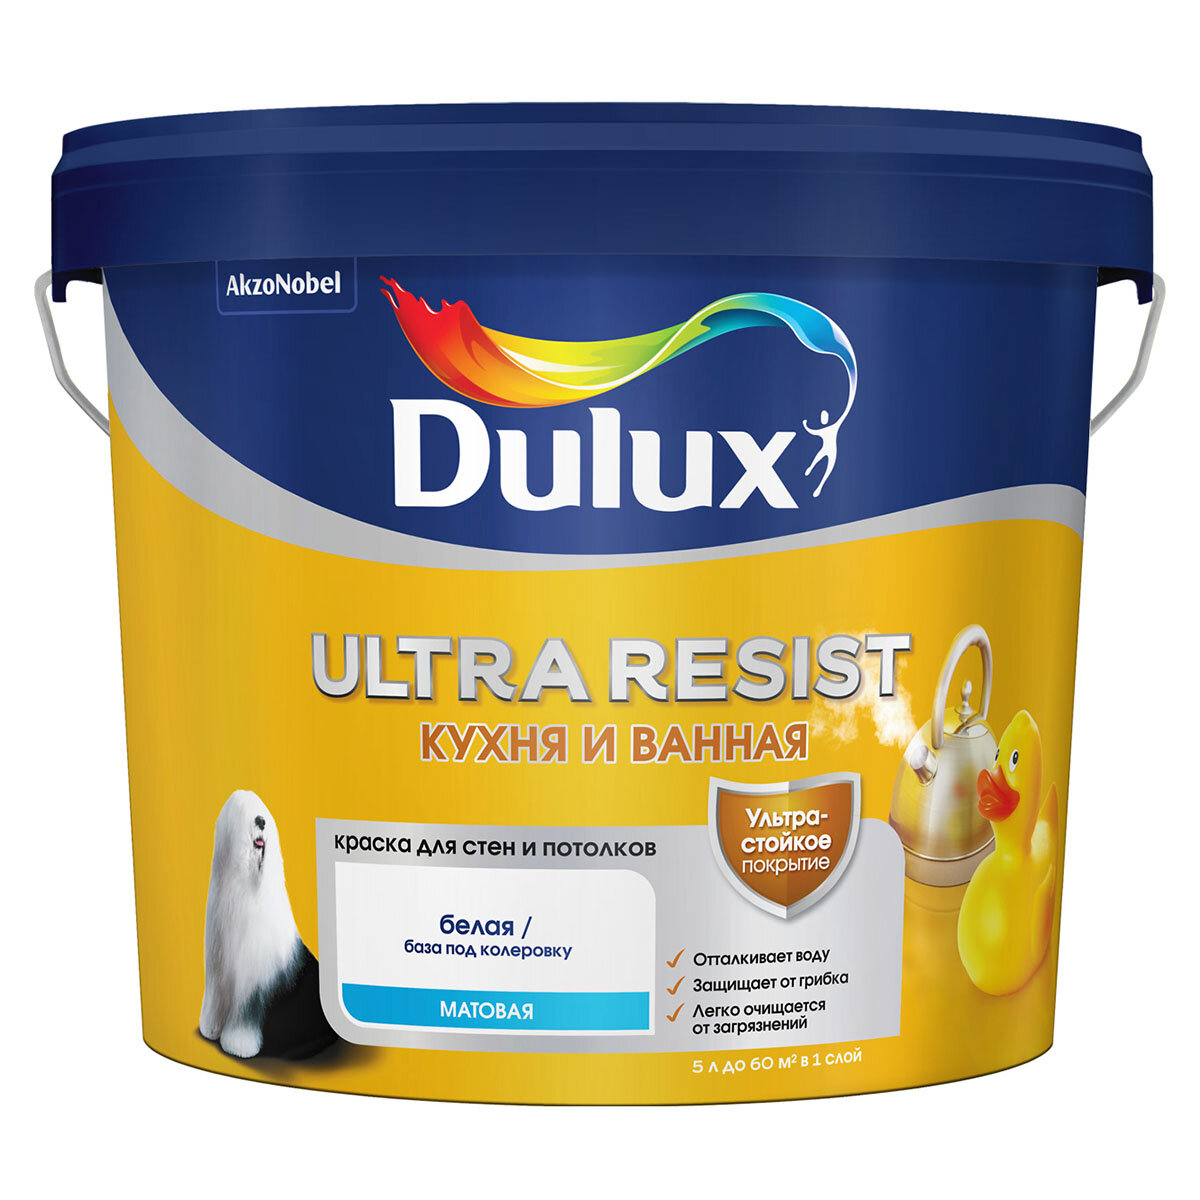 DULUX ULTRA RESIST кухня И ванная краска с защитой от плесени и грибка, матовая, база BW (5л)_NEW